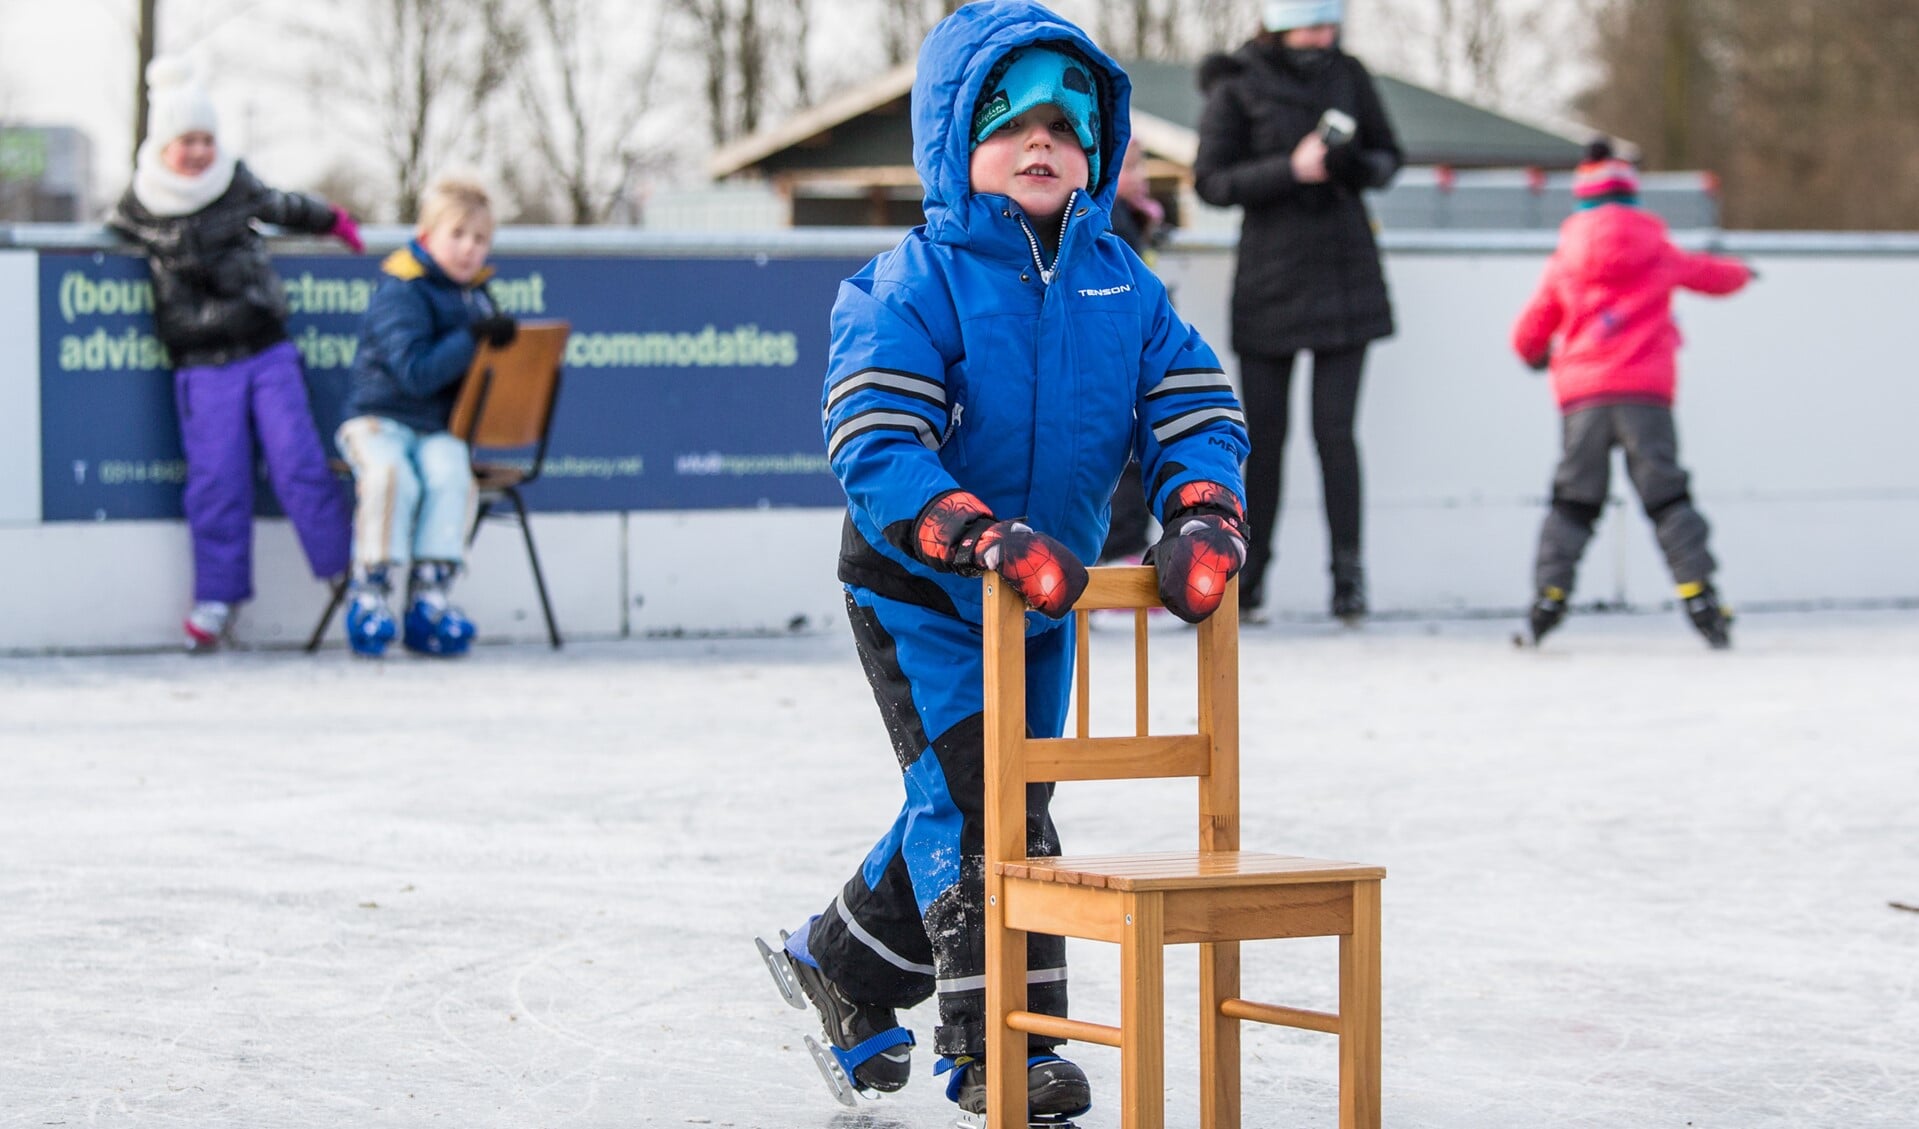 Leren schaatsen volgens de Hollandse School, dat kan binnenkort in het centrum van Varsseveld. Foto: Burry van den Brink